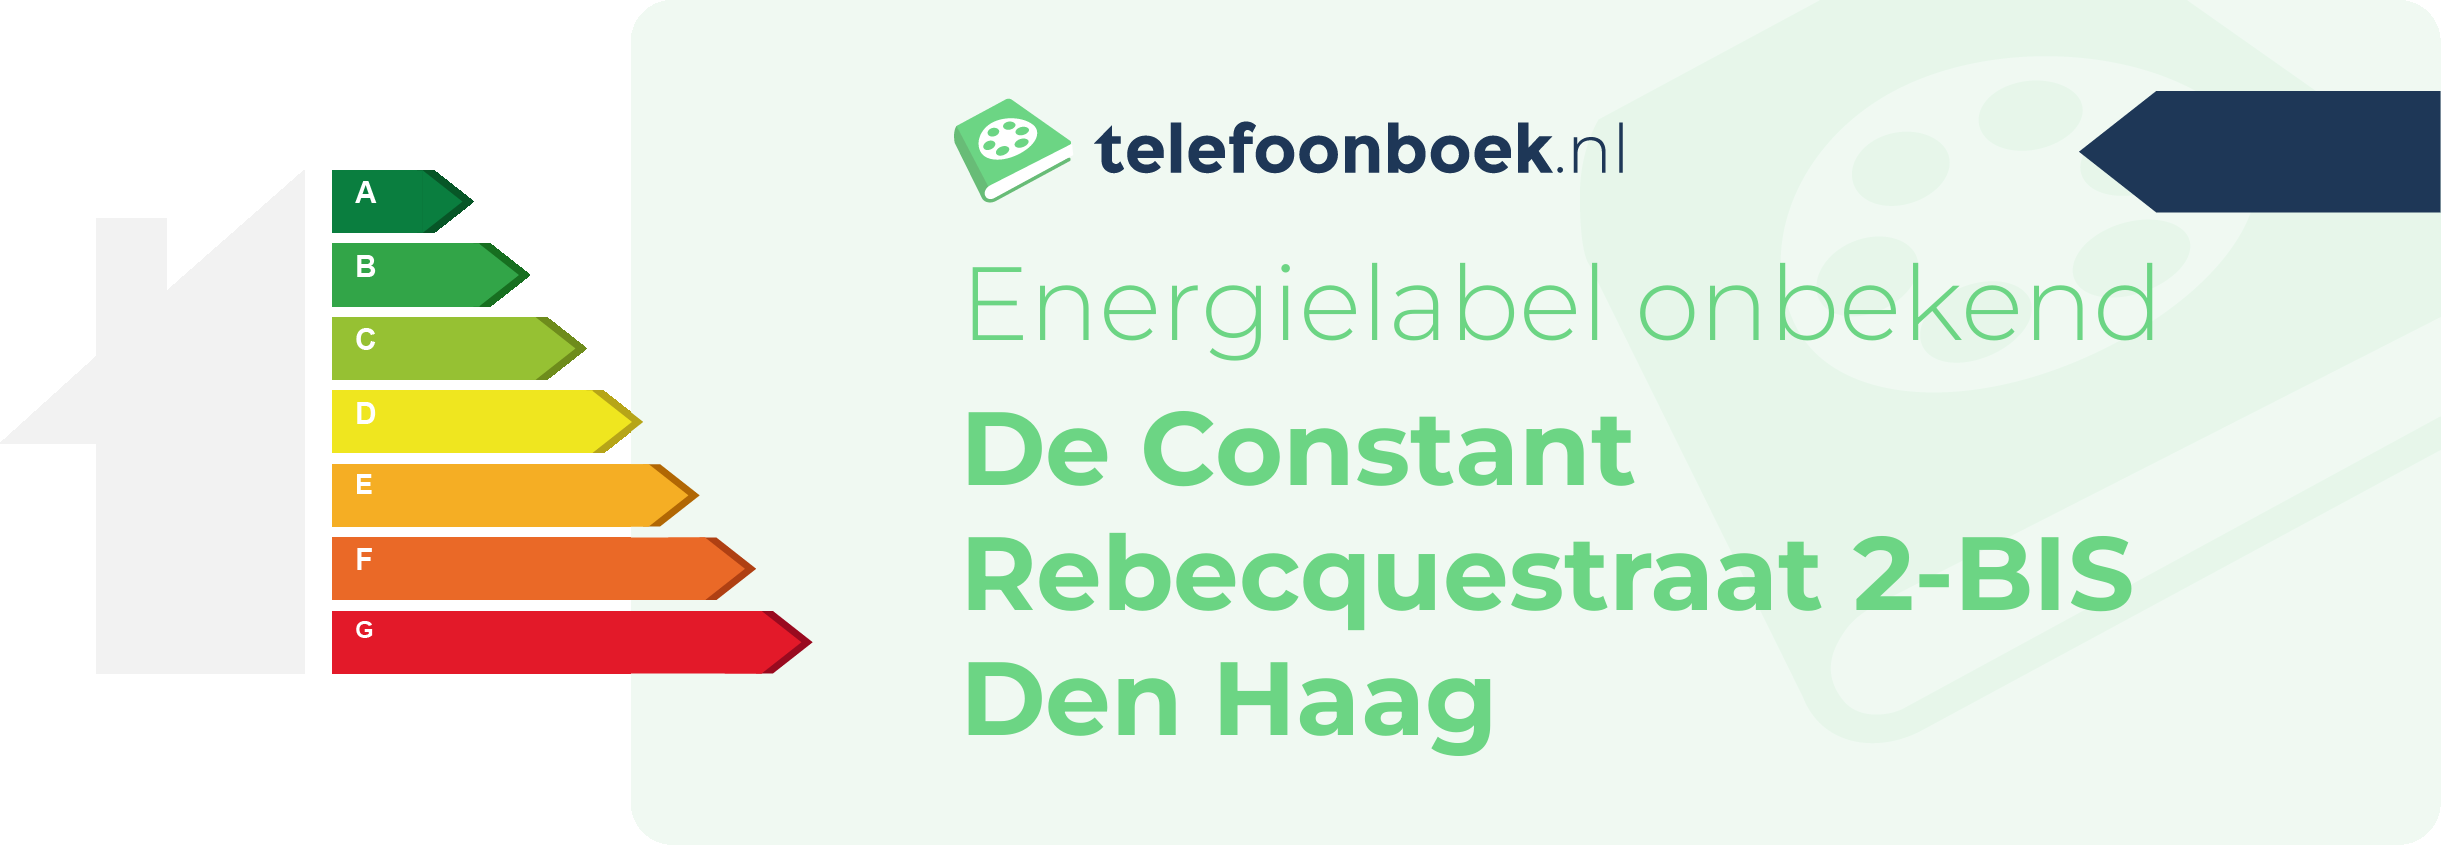 Energielabel De Constant Rebecquestraat 2-BIS Den Haag